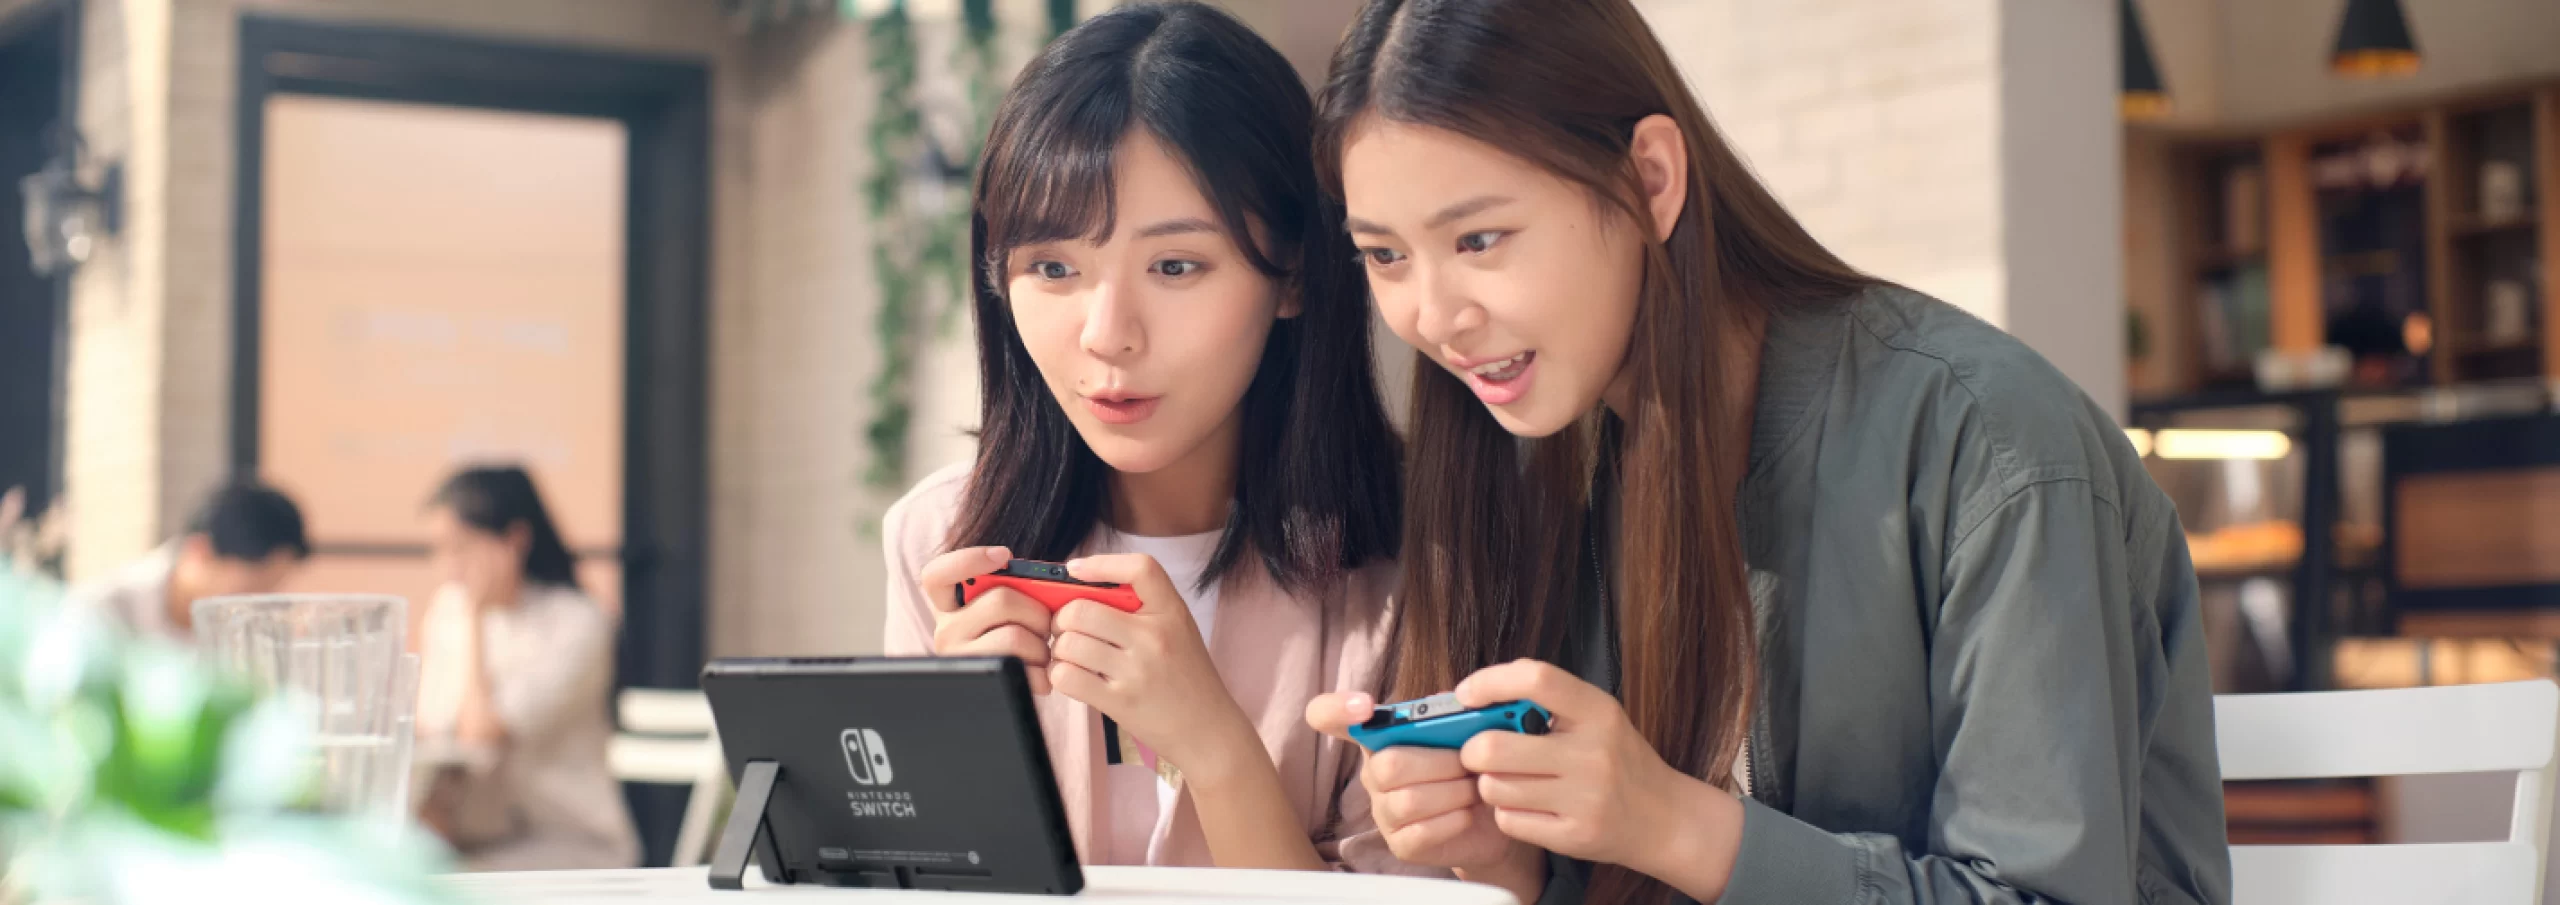 任天堂主机Switch全球总销量达1.1亿，或将超过索尼PS4销量记录